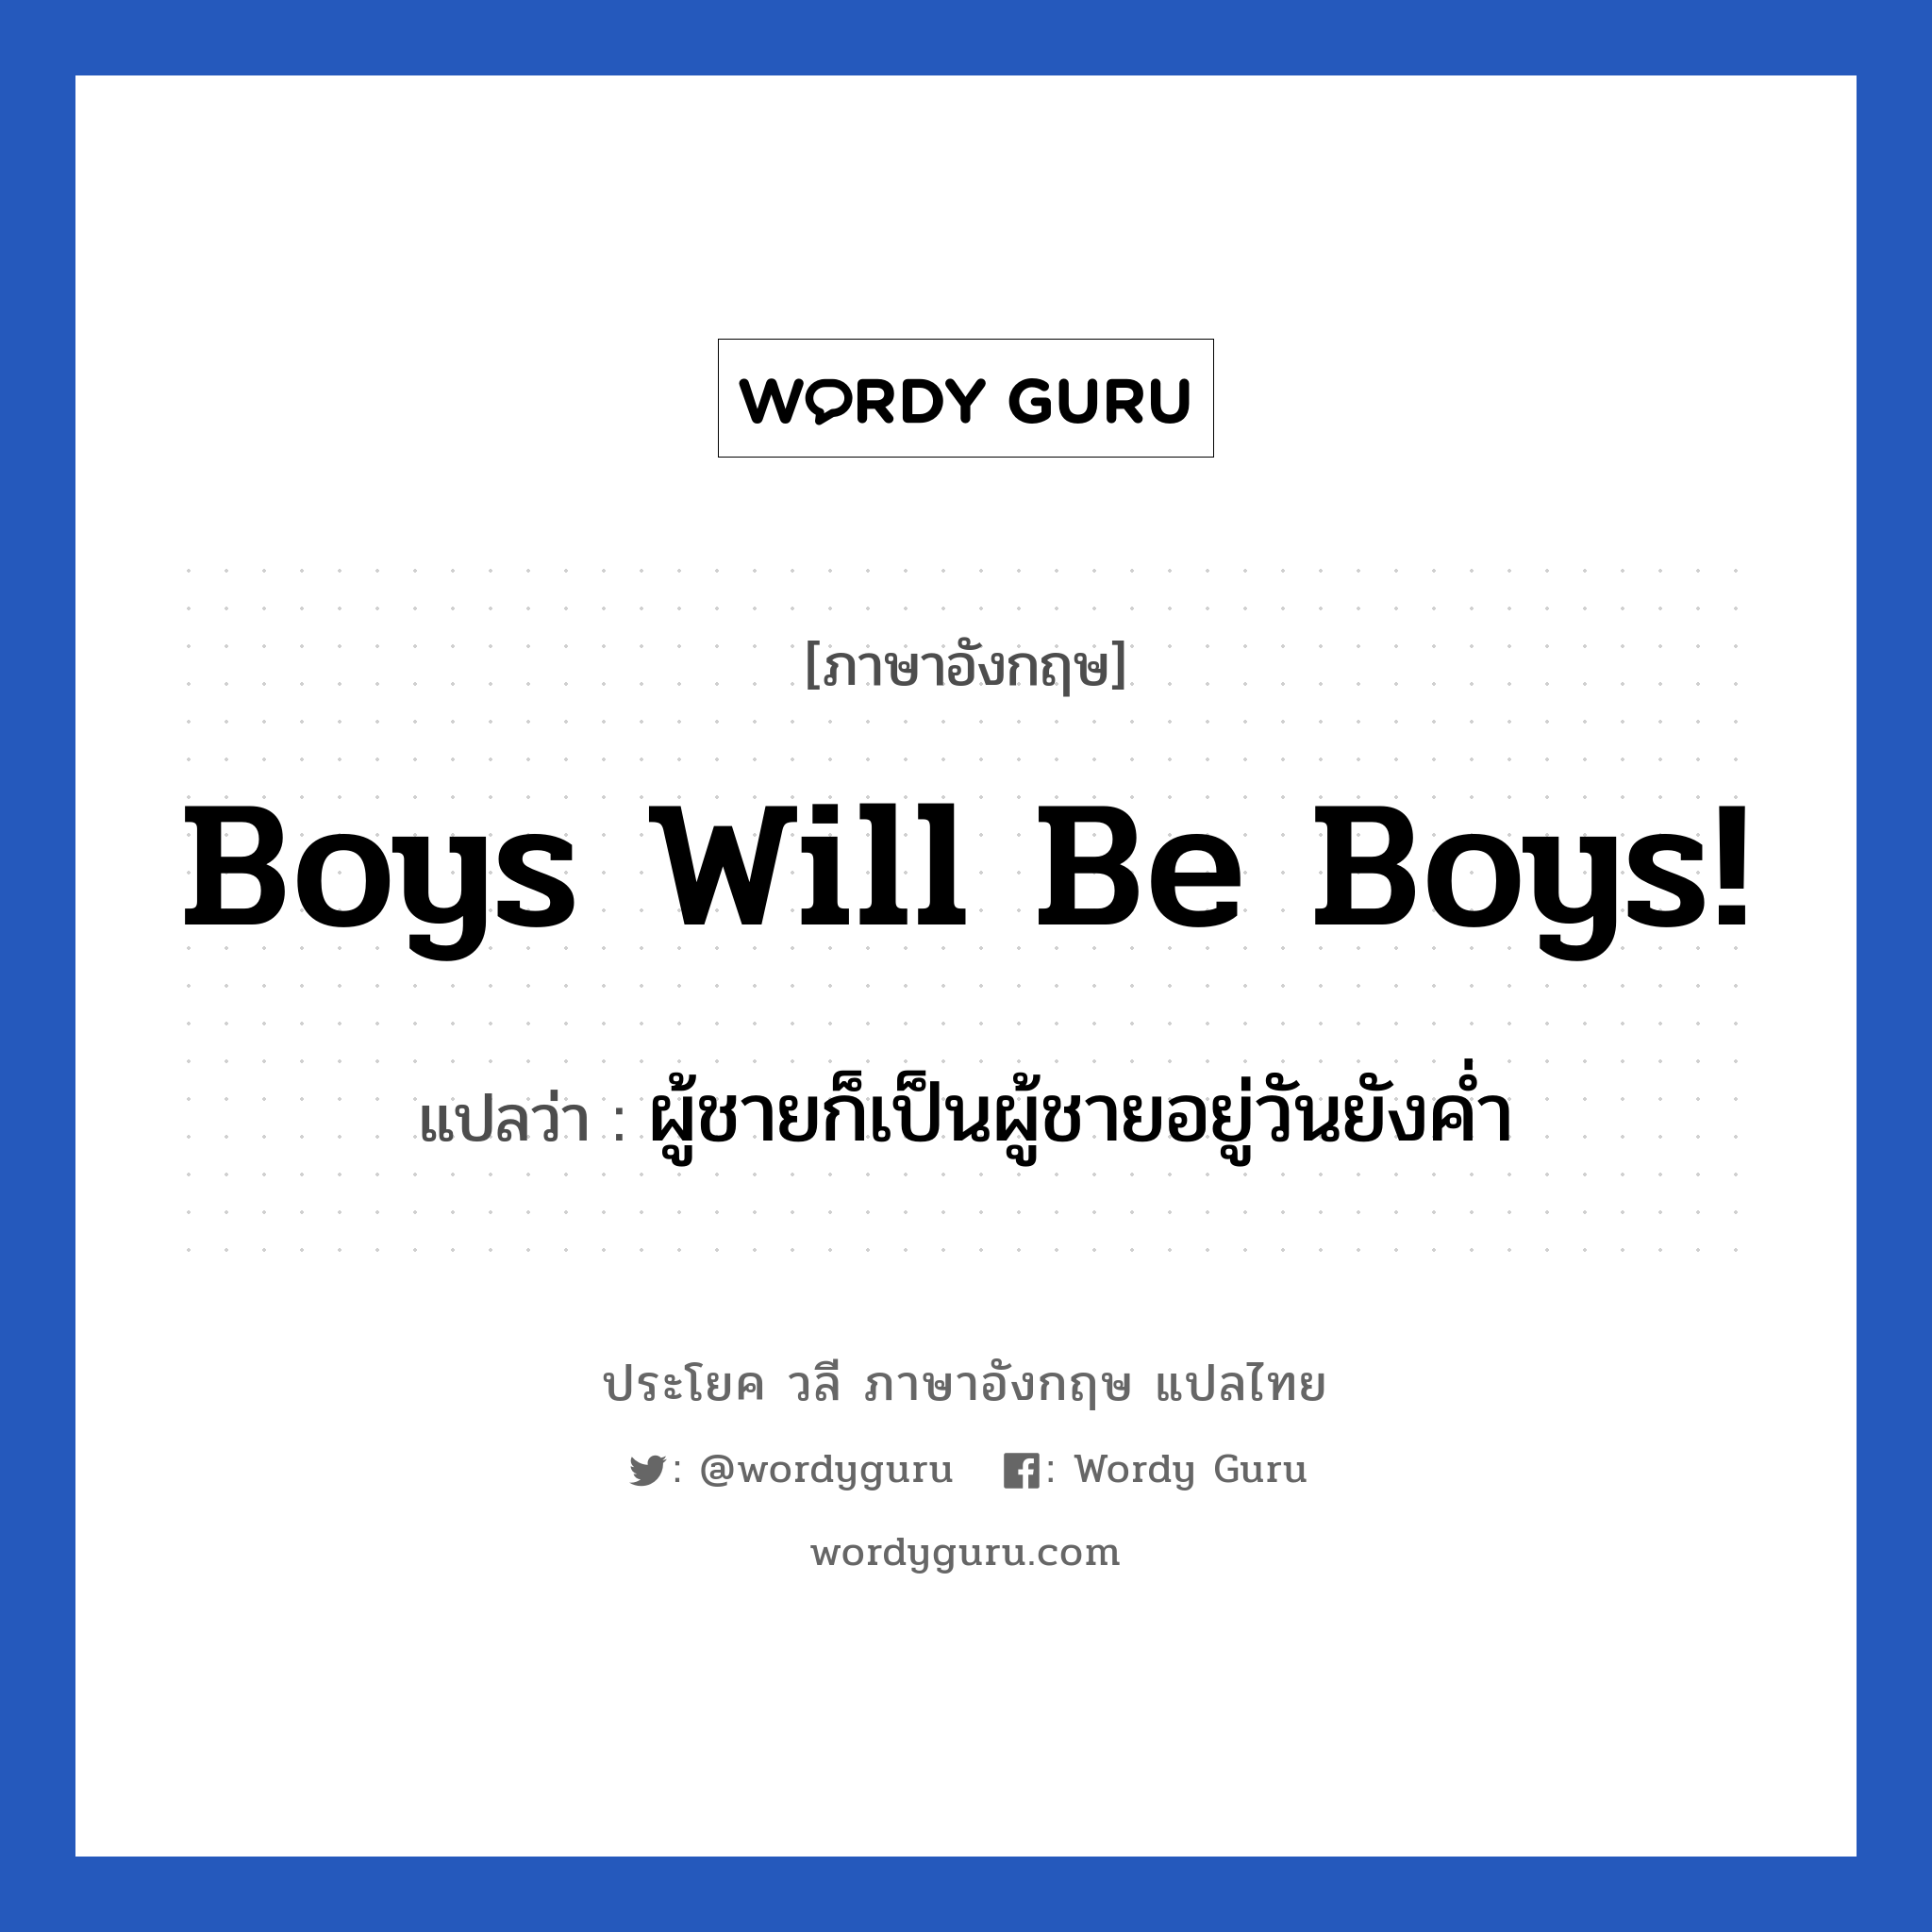 ผู้ชายก็เป็นผู้ชายอยู่วันยังค่ำ ภาษาอังกฤษ?, วลีภาษาอังกฤษ ผู้ชายก็เป็นผู้ชายอยู่วันยังค่ำ แปลว่า Boys will be boys!